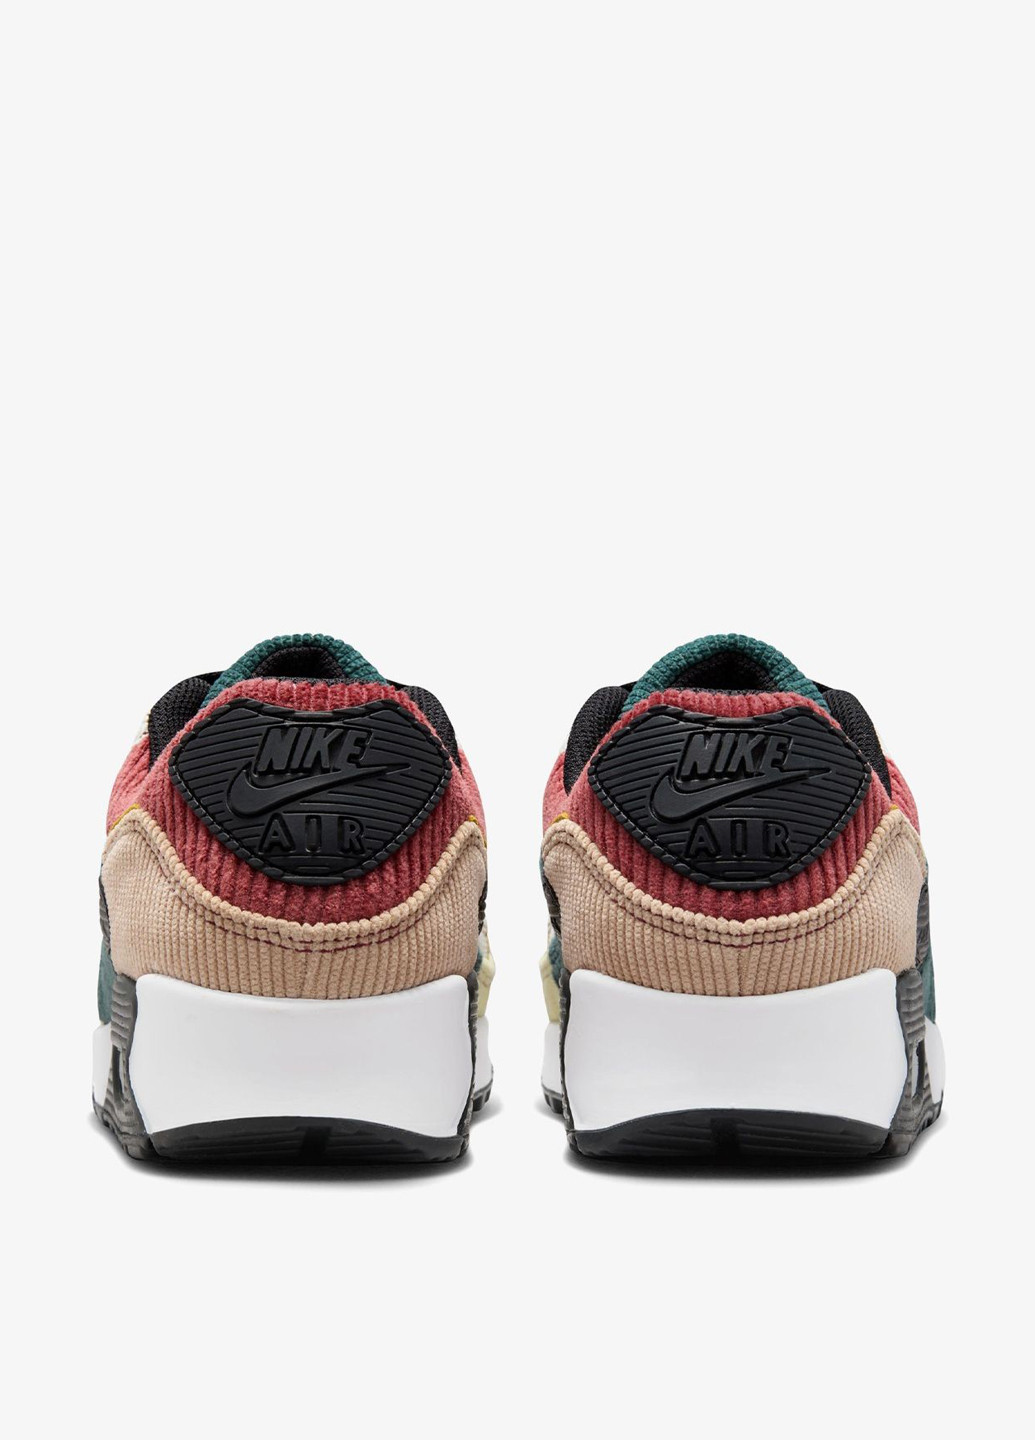 Цветные демисезонные кроссовки Nike AIR MAX 90 SE